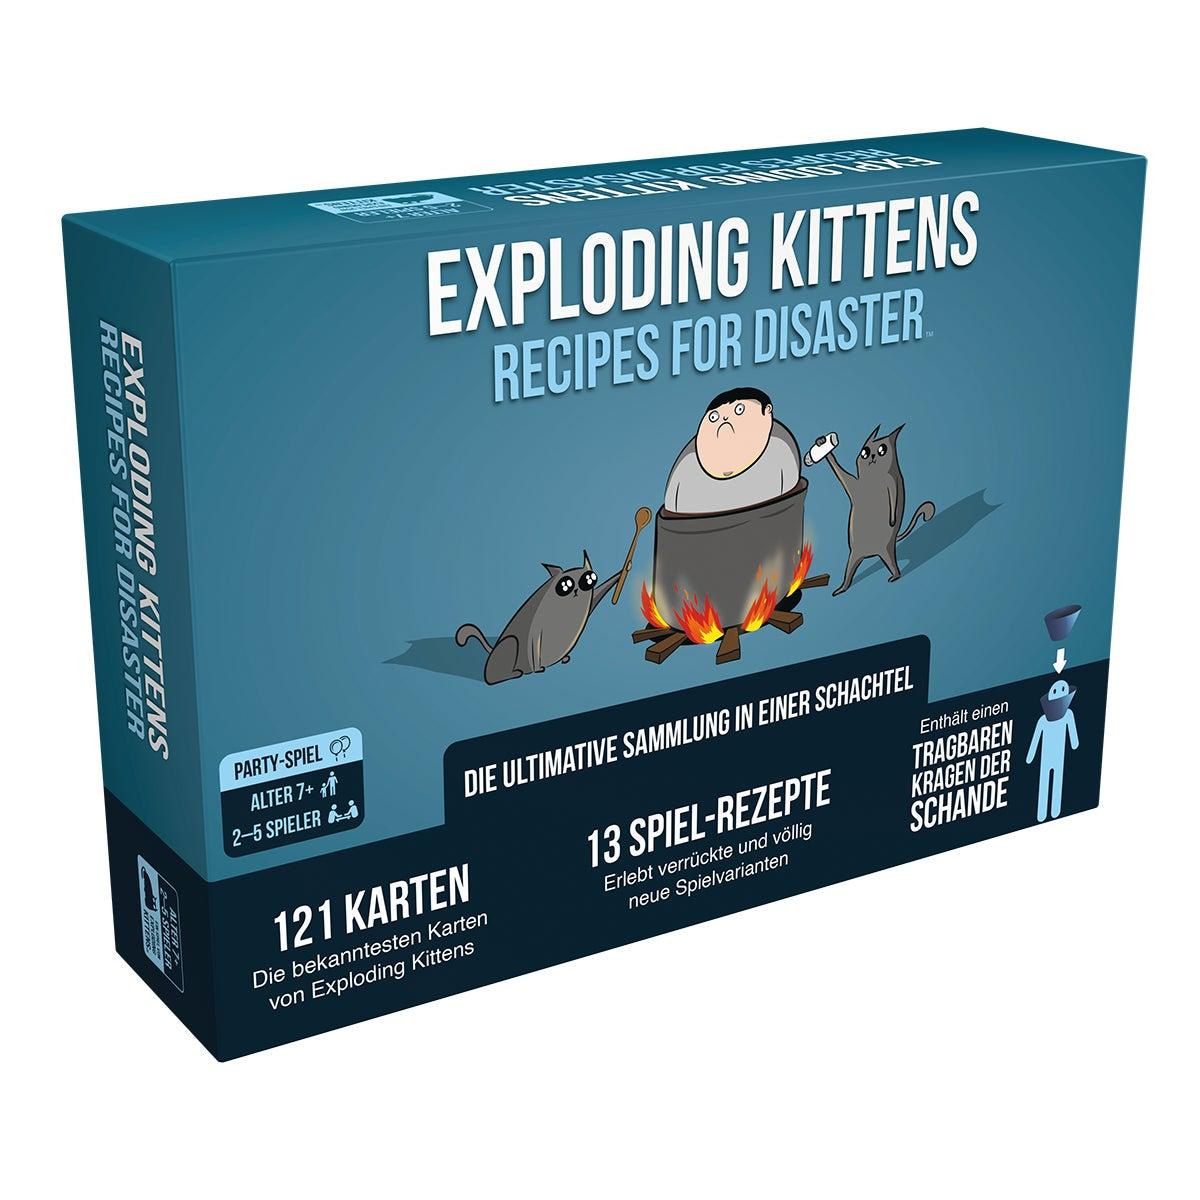 Exploding Kittens - Recipes for Disaster (deutsch)